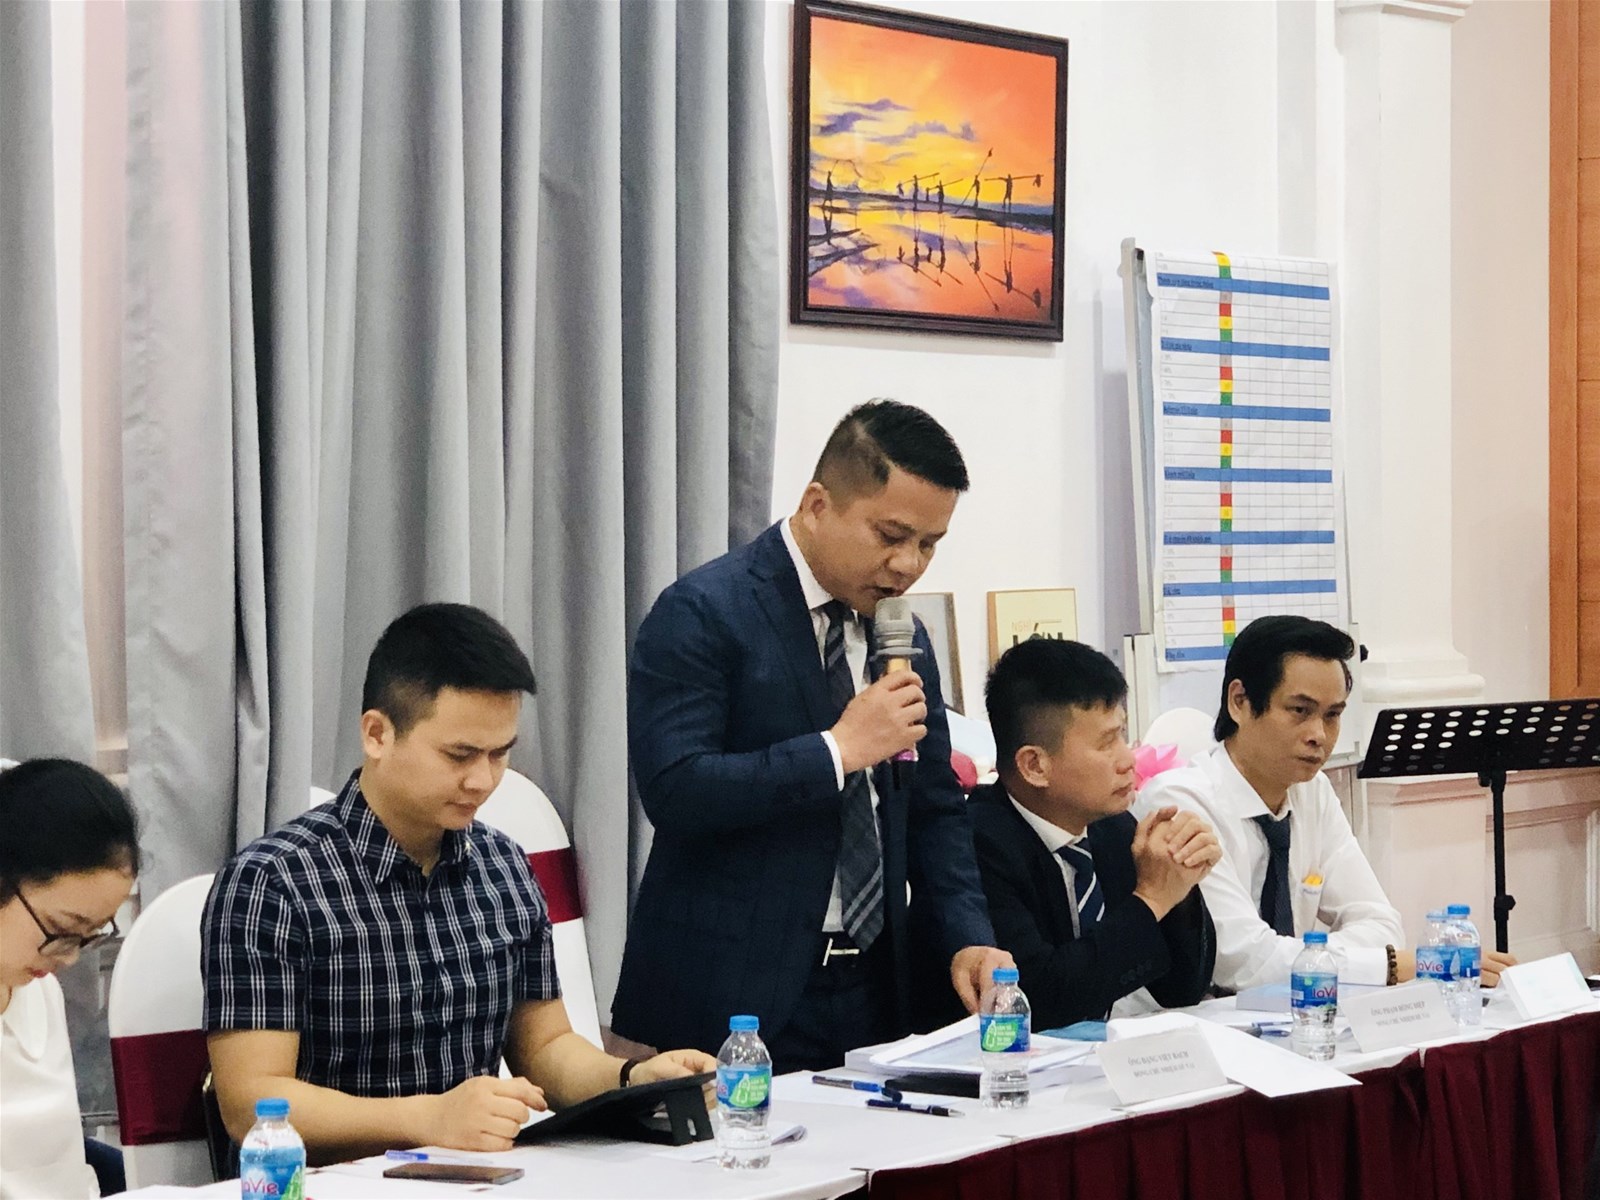 Chương trình Hội thảo Nghiệm thu đề tài khoa học Khu công nghiệp sinh thái - Kinh tế tuần hoàn từ lý thuyết tới thực tiễn phát triển tại Việt Nam